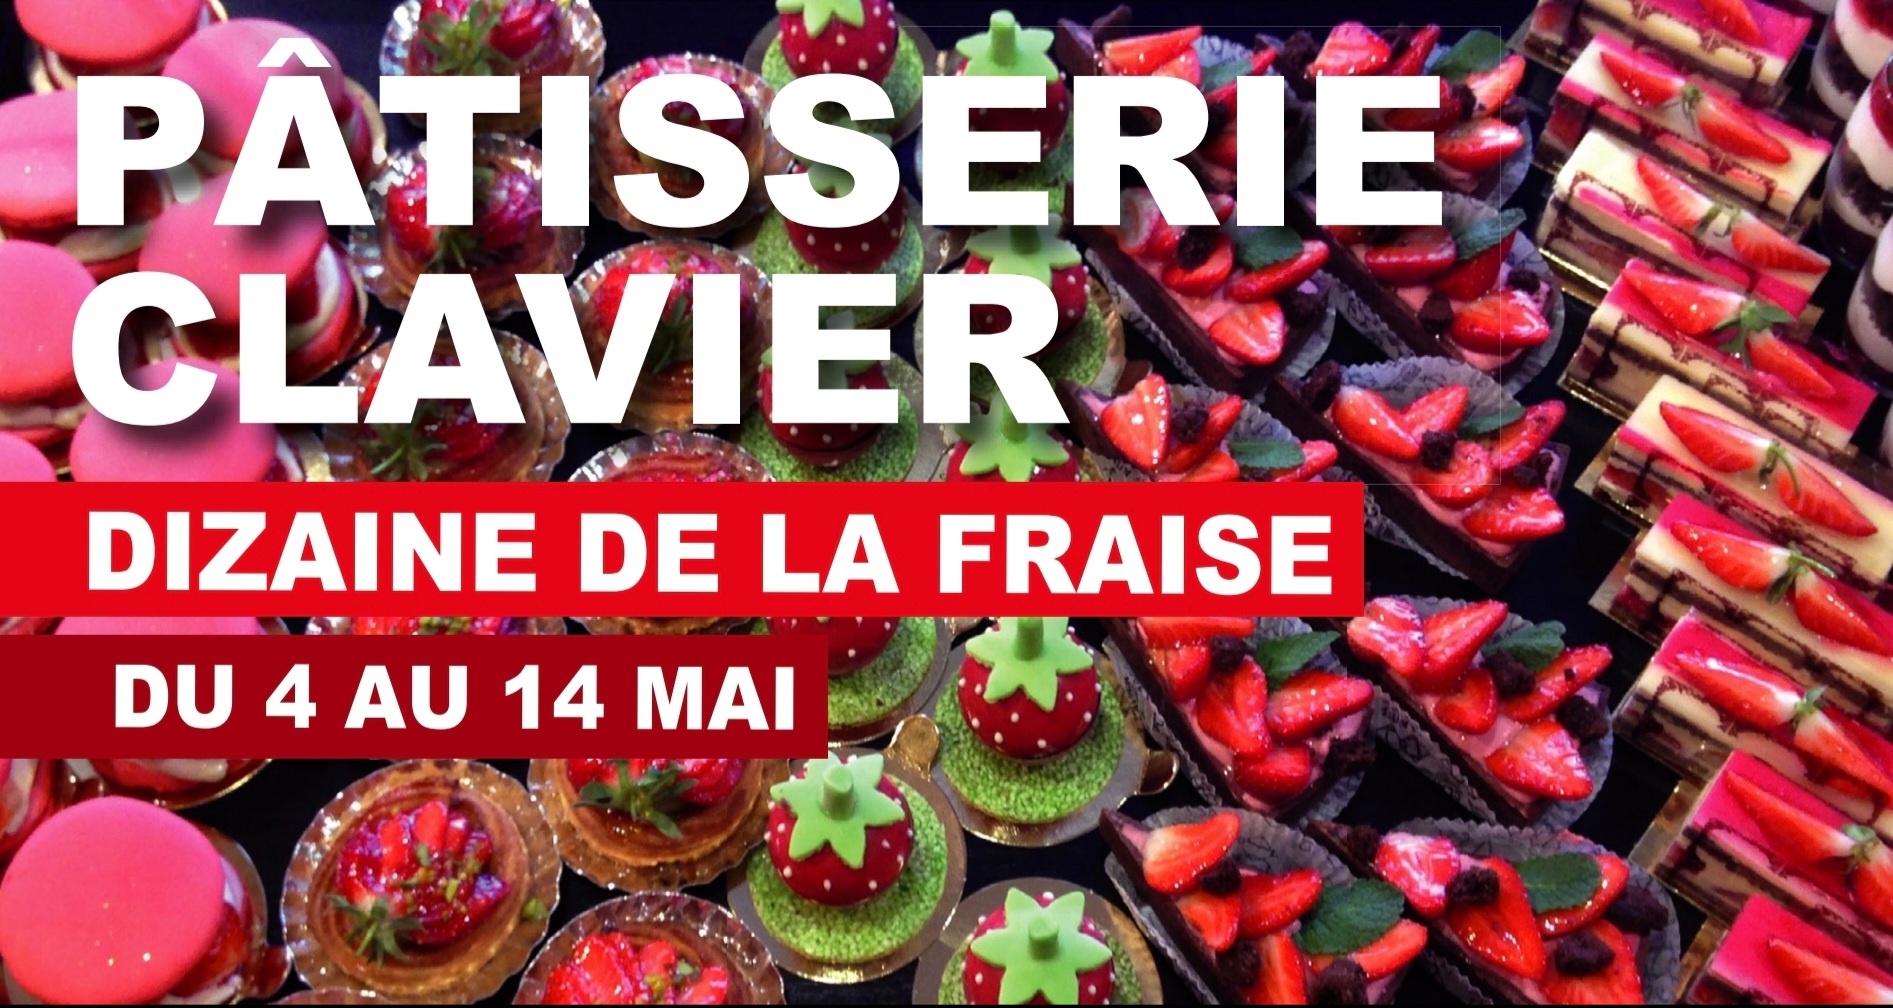 BAGNOLS-PONT La fraise à l’honneur à la pâtisserie Clavier du 4 au 14 mai 